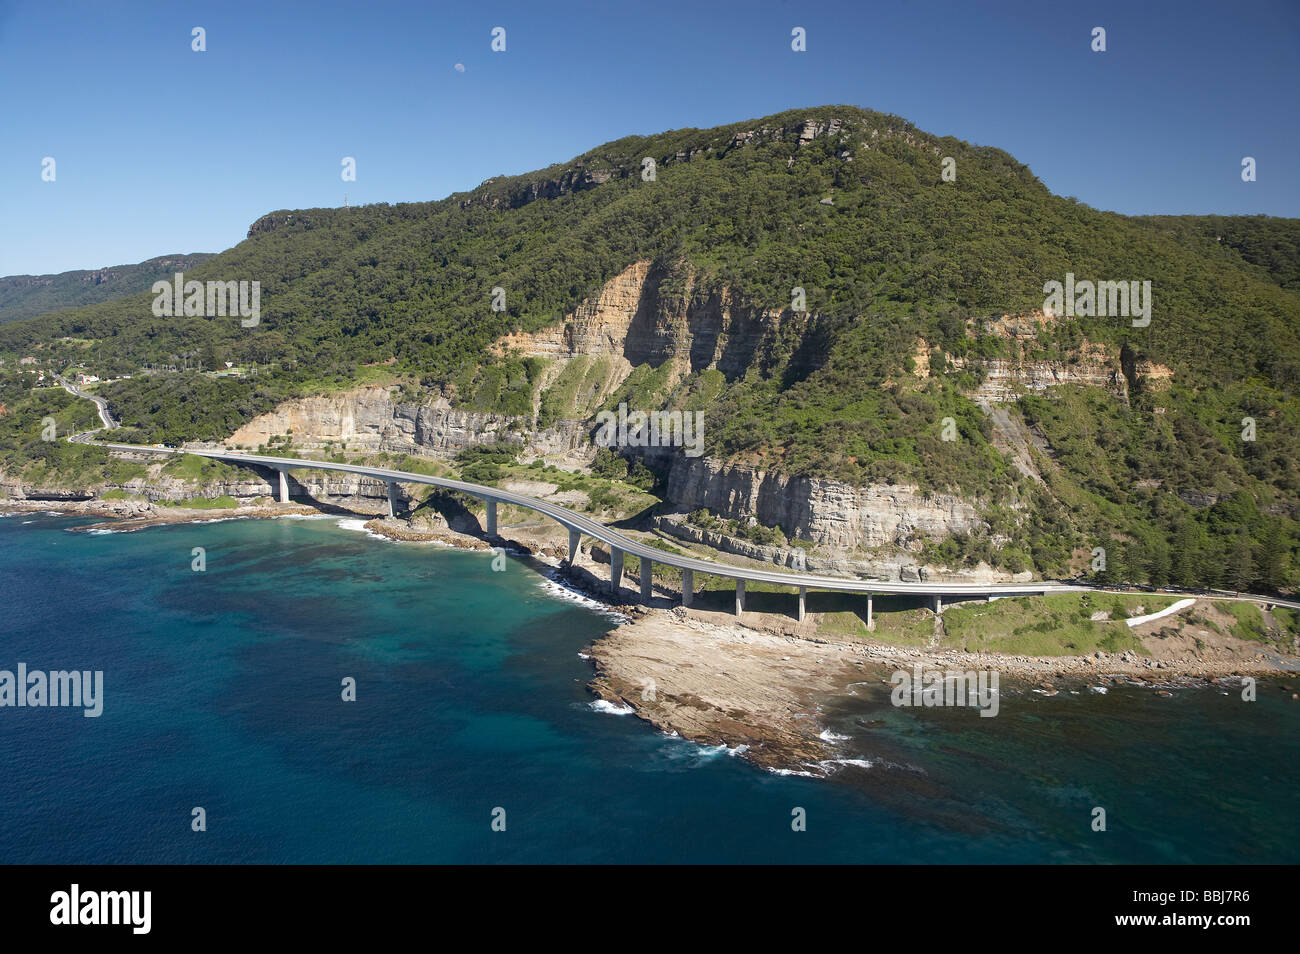 Sea Cliff Bridge in der Nähe von Wollongong südlich von Sydney New South Wales Australien Antenne Stockfoto